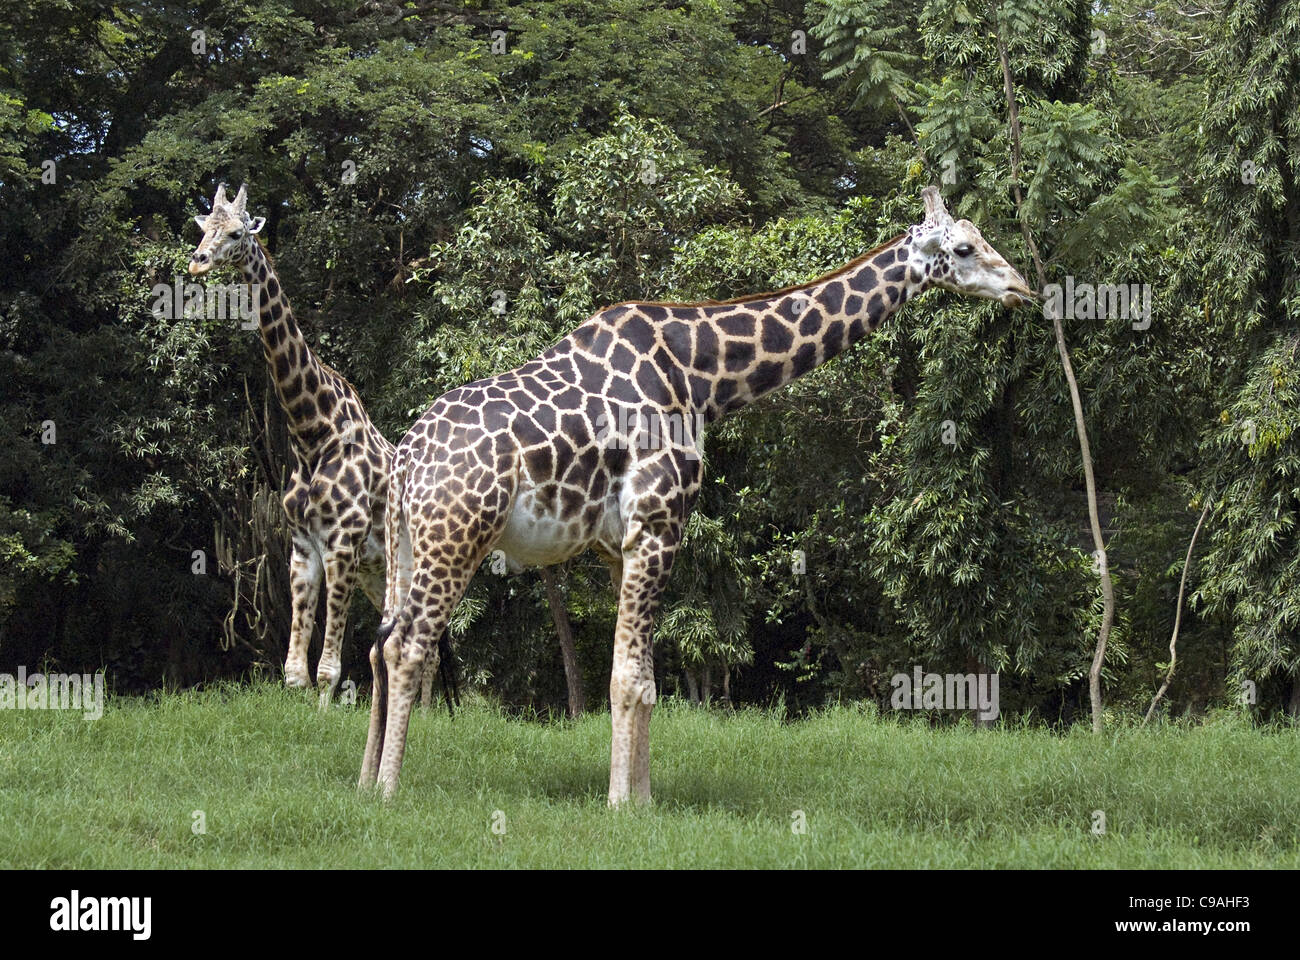 Giraffe at Mysore Zoo Stock Photo